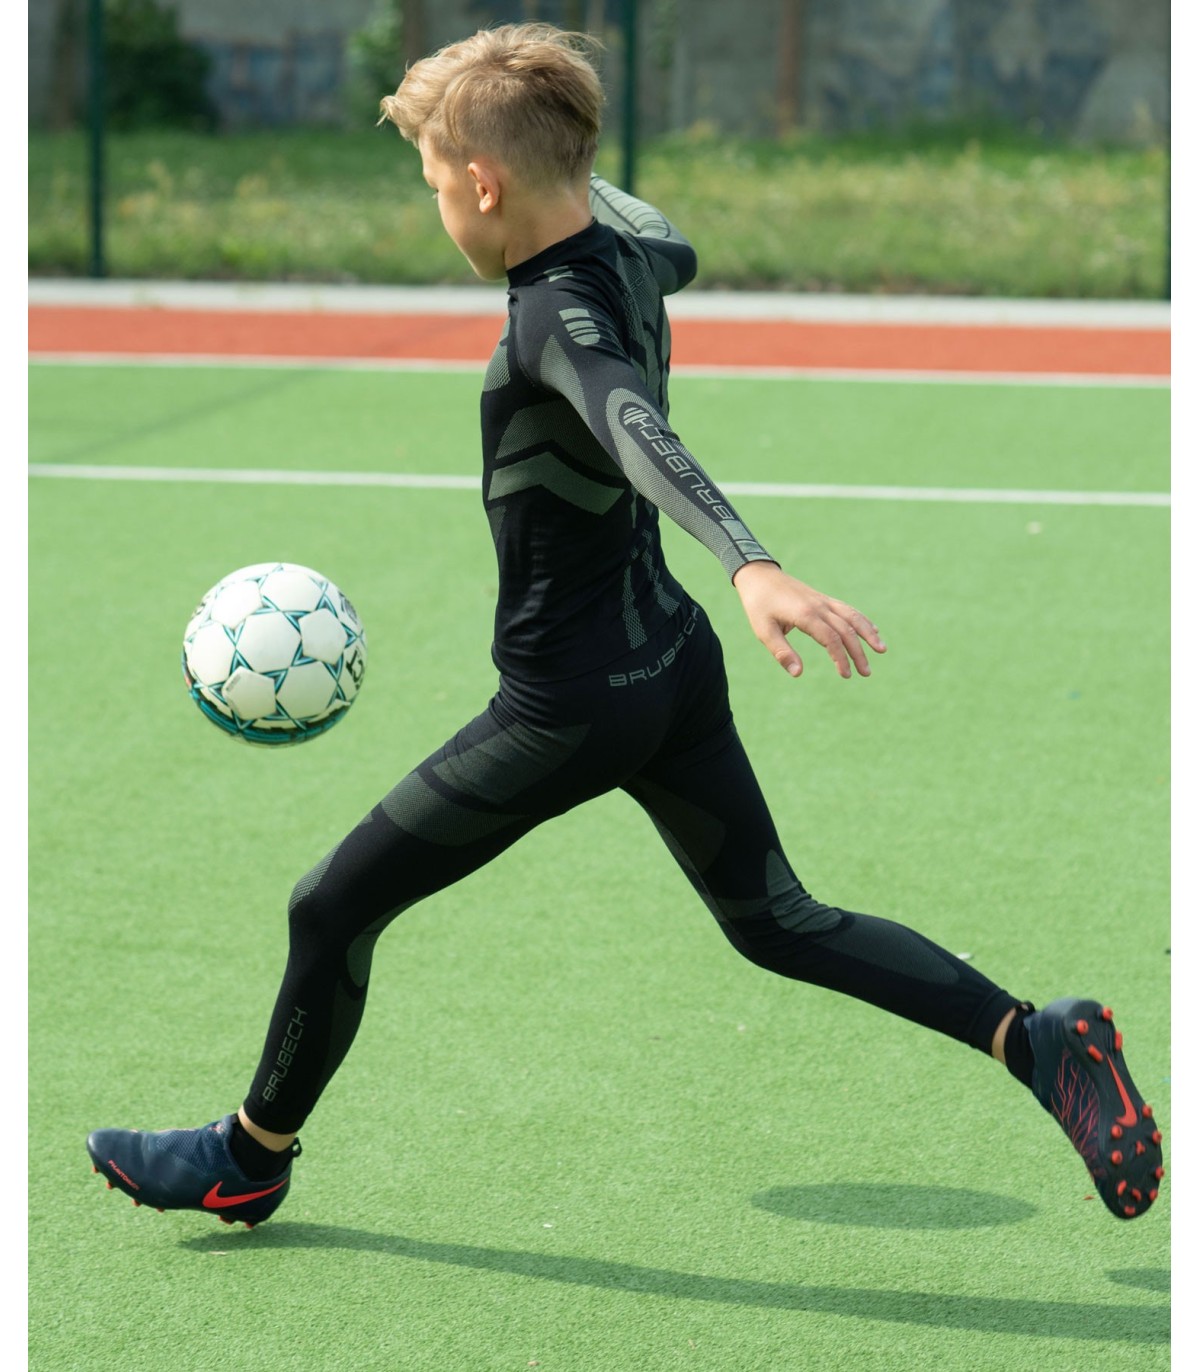 Football Enfant: Jouer au football quand il fait froid